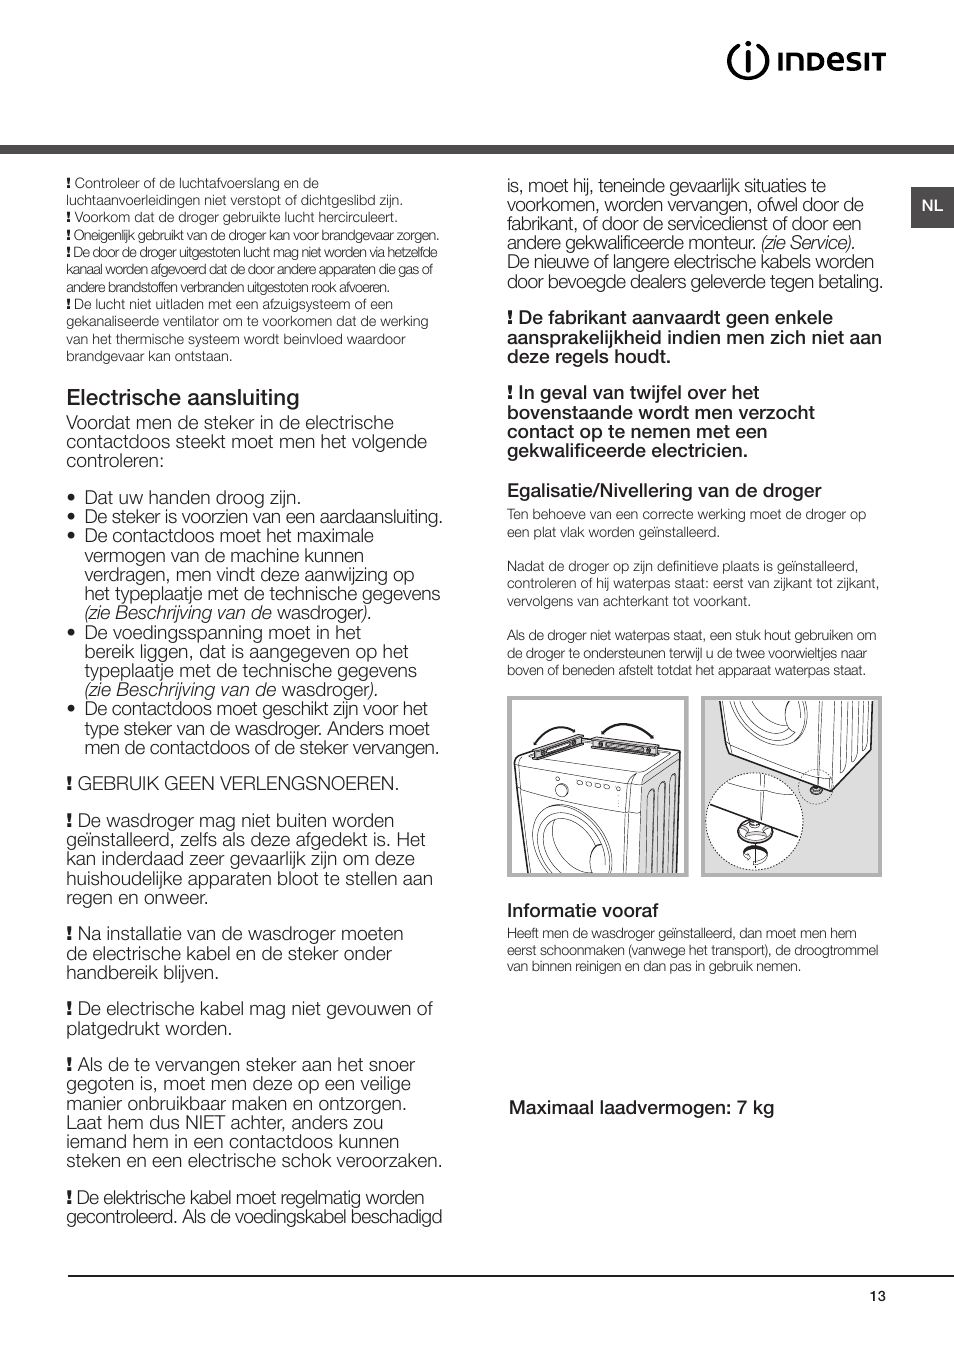 Installatie, Waar men de wasdroger moet installeren, Electrische  aansluiting | Indesit IDV-75-(EU) User Manual | Page 13 / 70 | Original mode